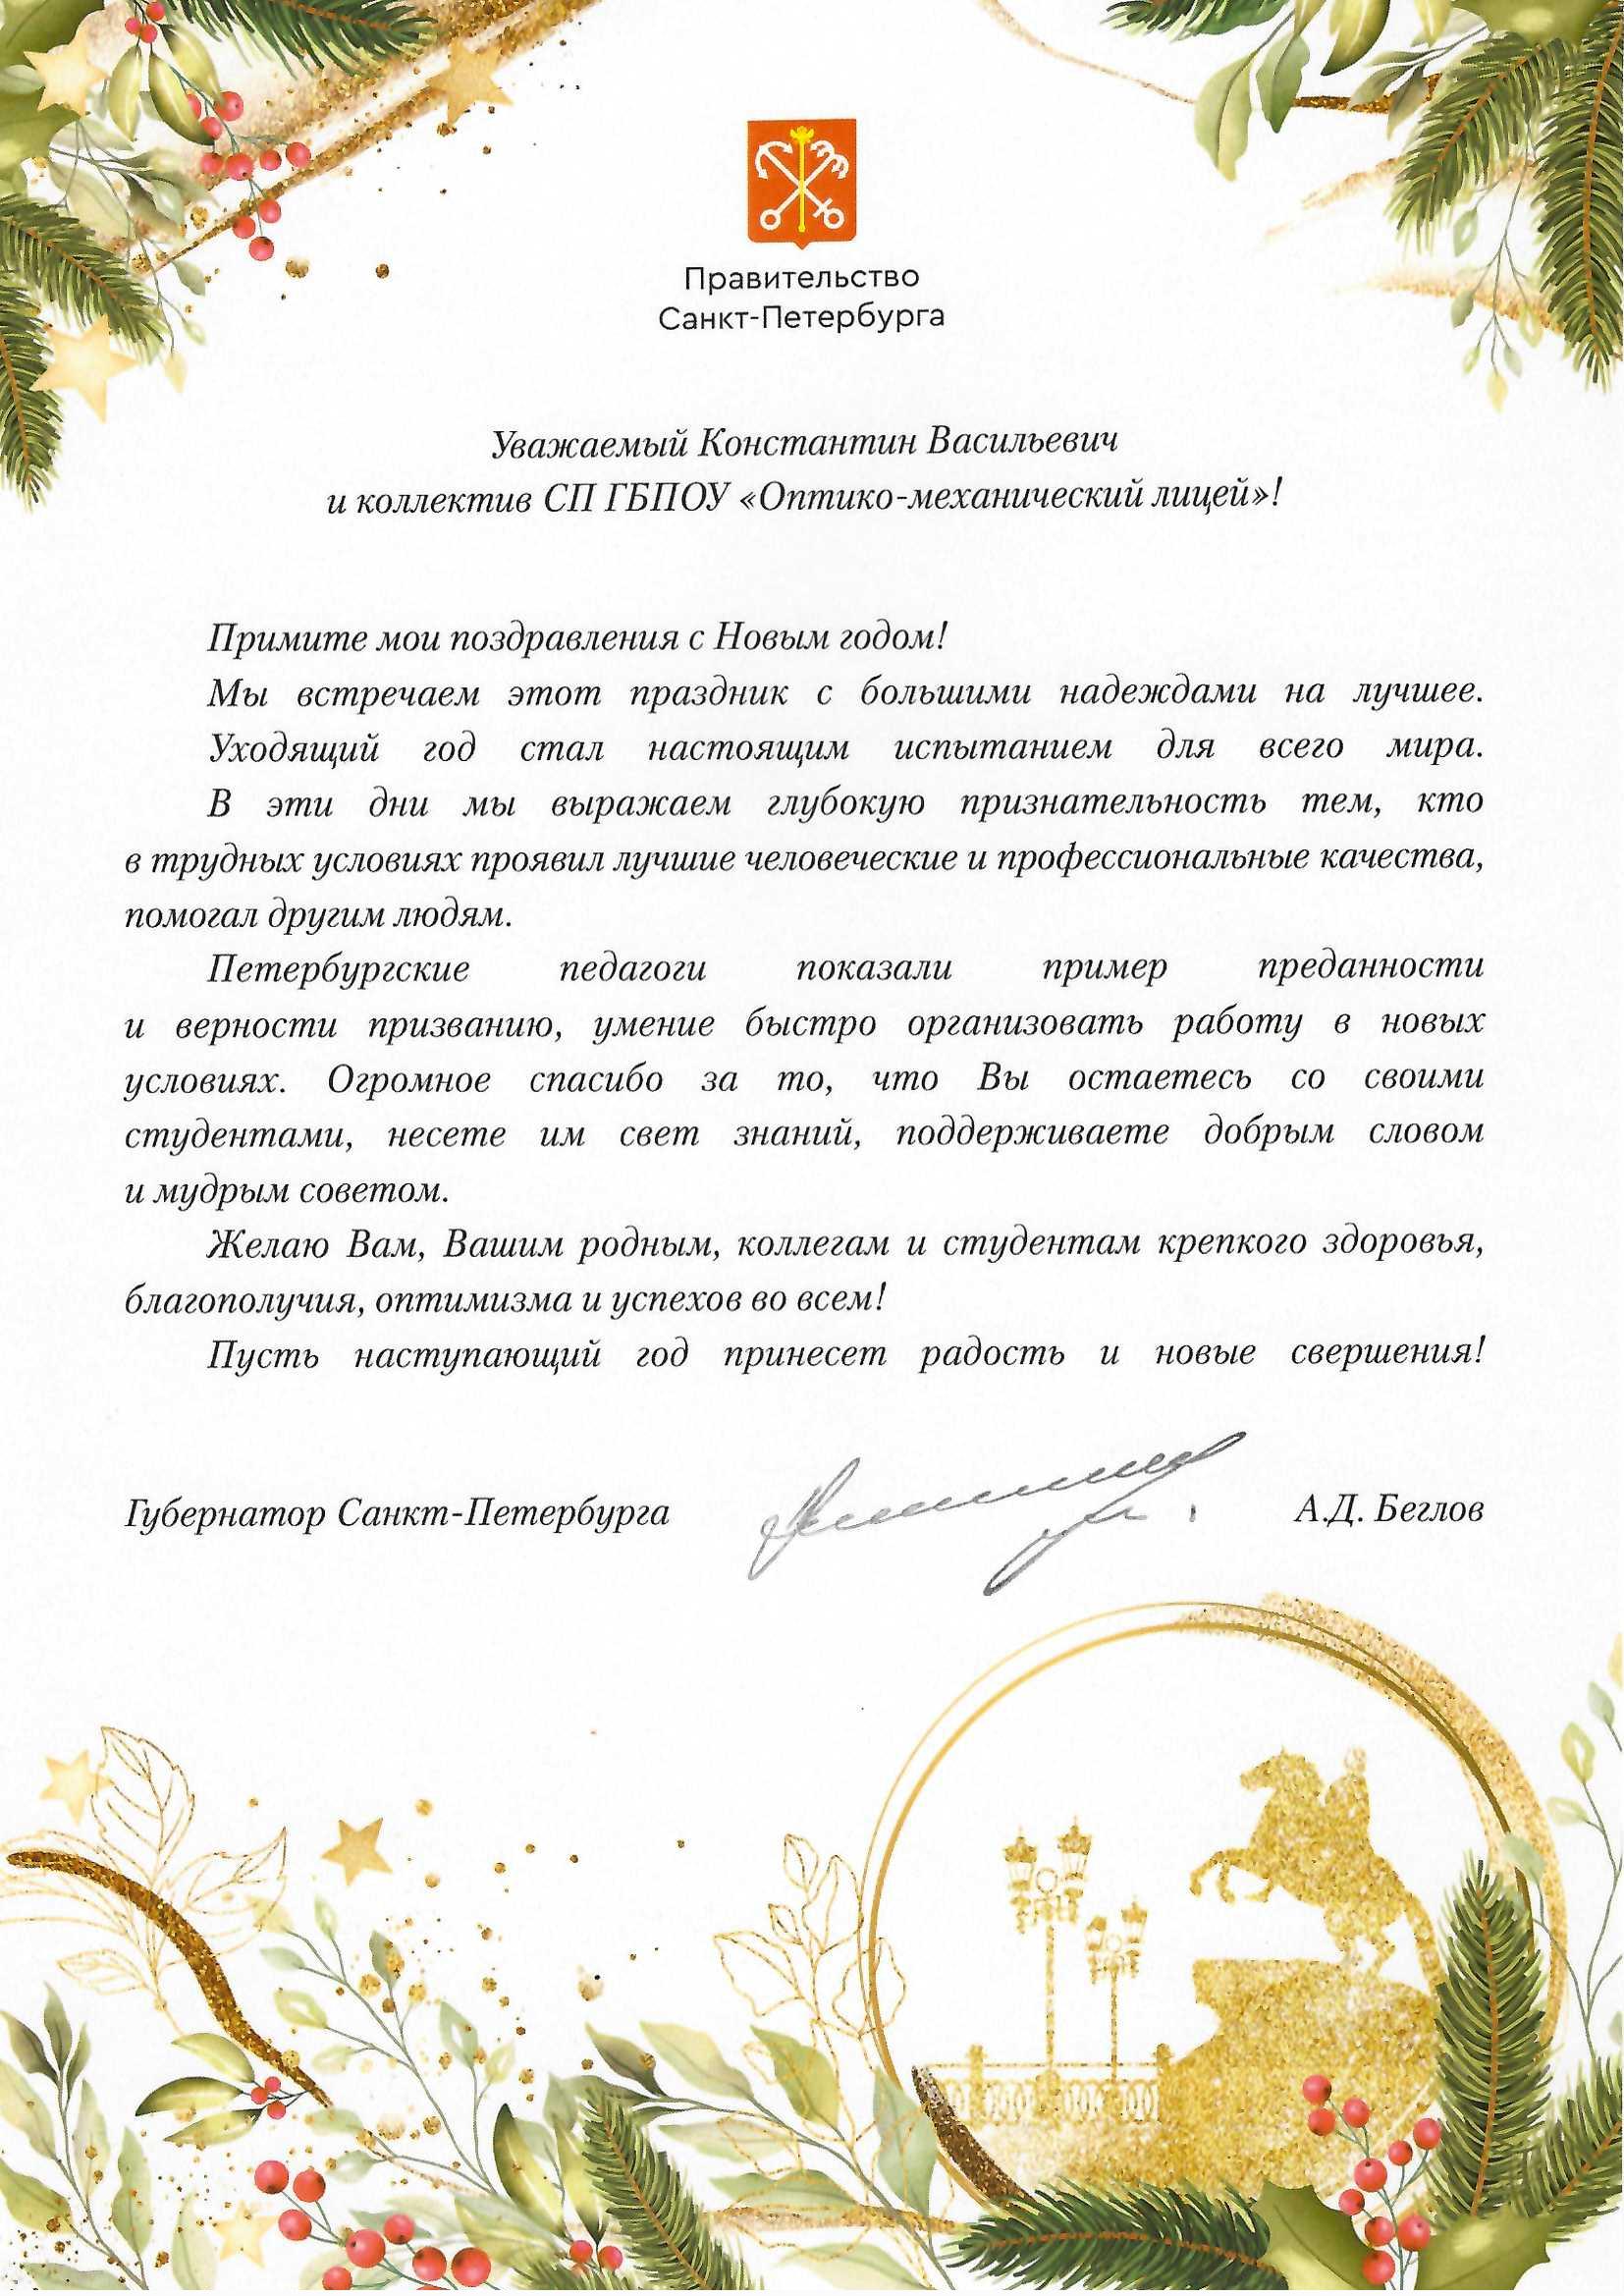 Новогоднее поздравление губернатора Санкт-Петербурга